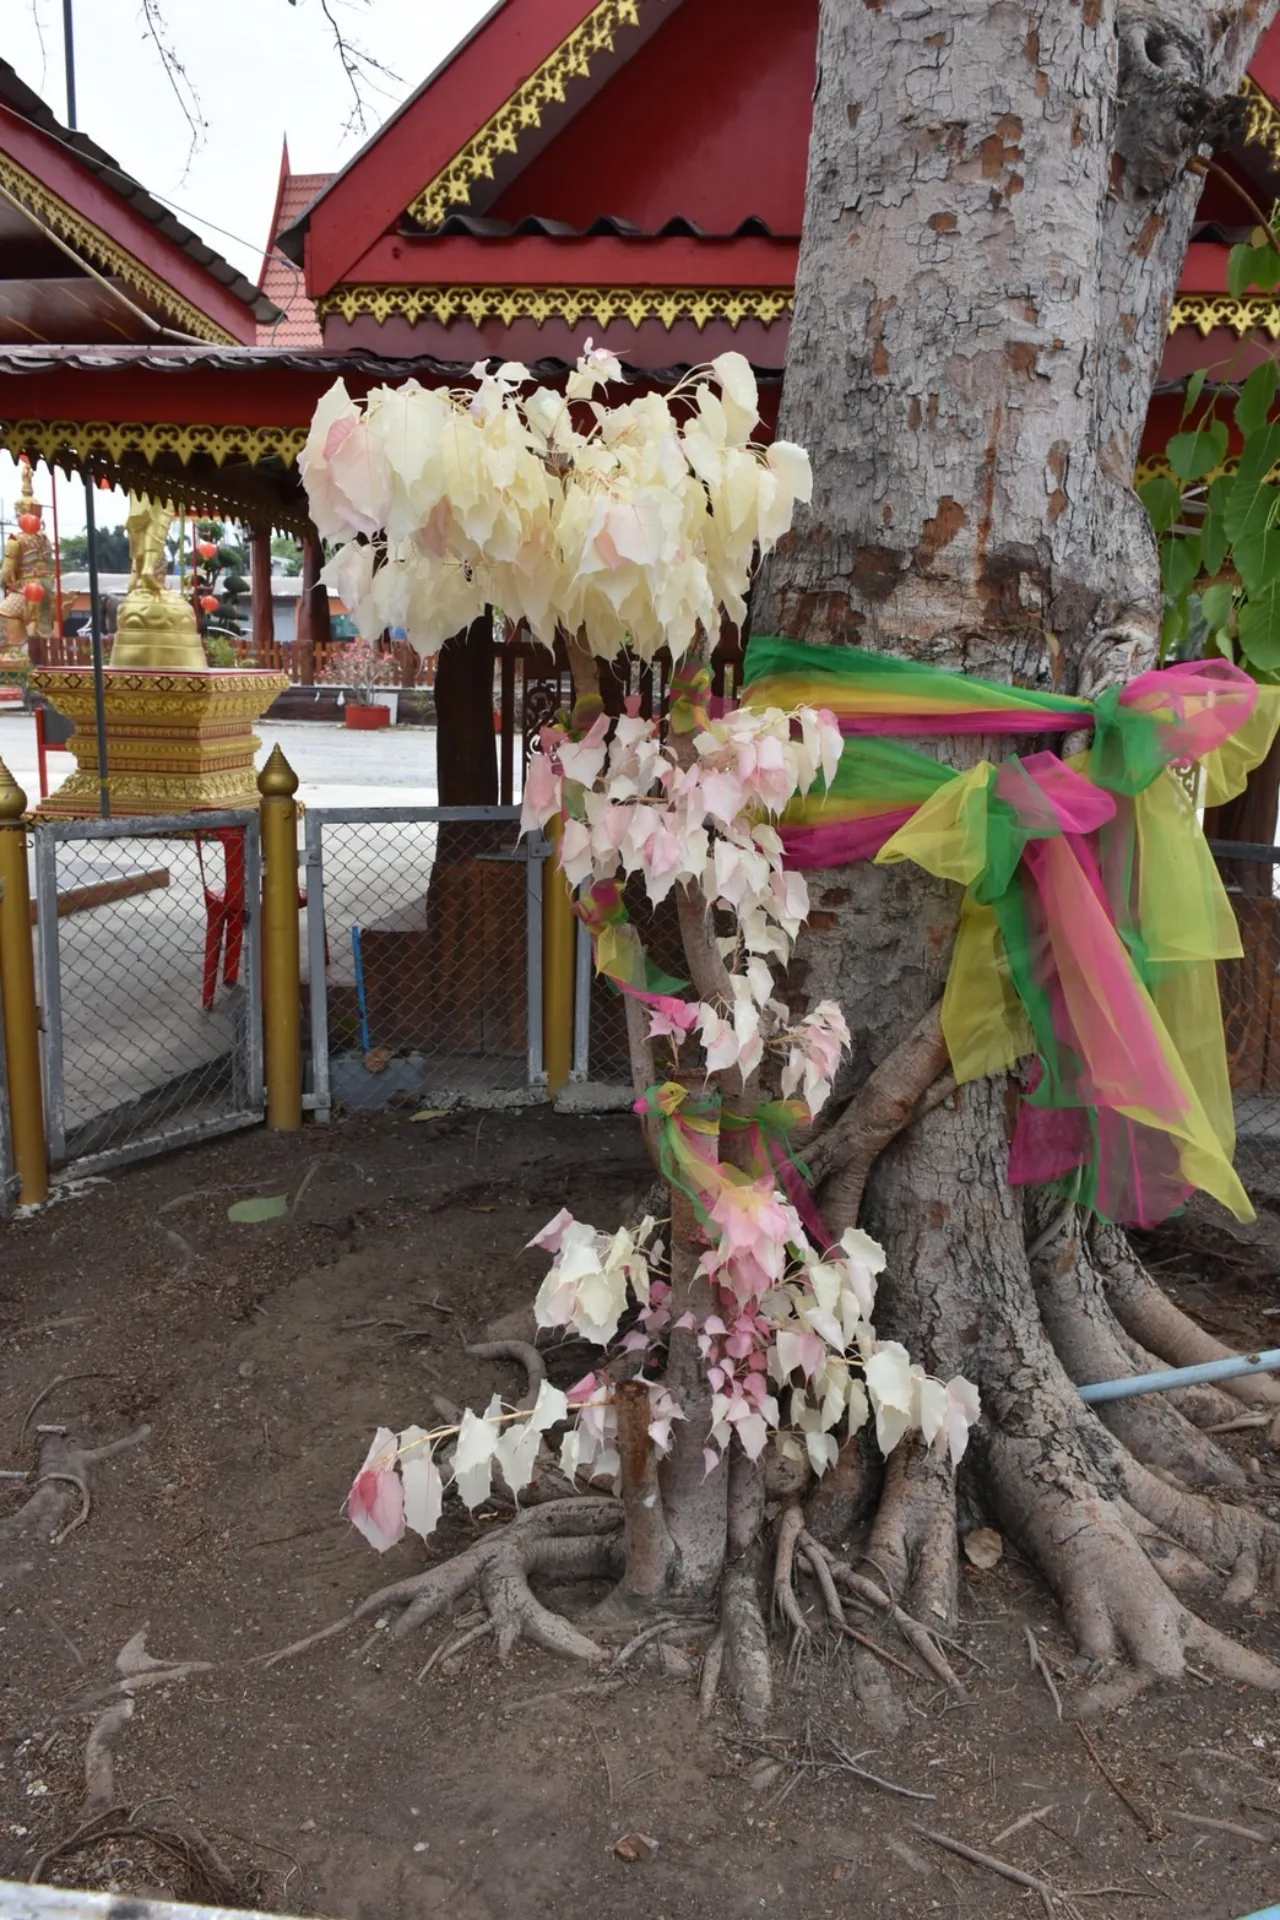 ต้นโพธิ์เงินโพธิ์ทอง ต้นจริง-''Bodhi Ngern Bodhi Tree real tree''